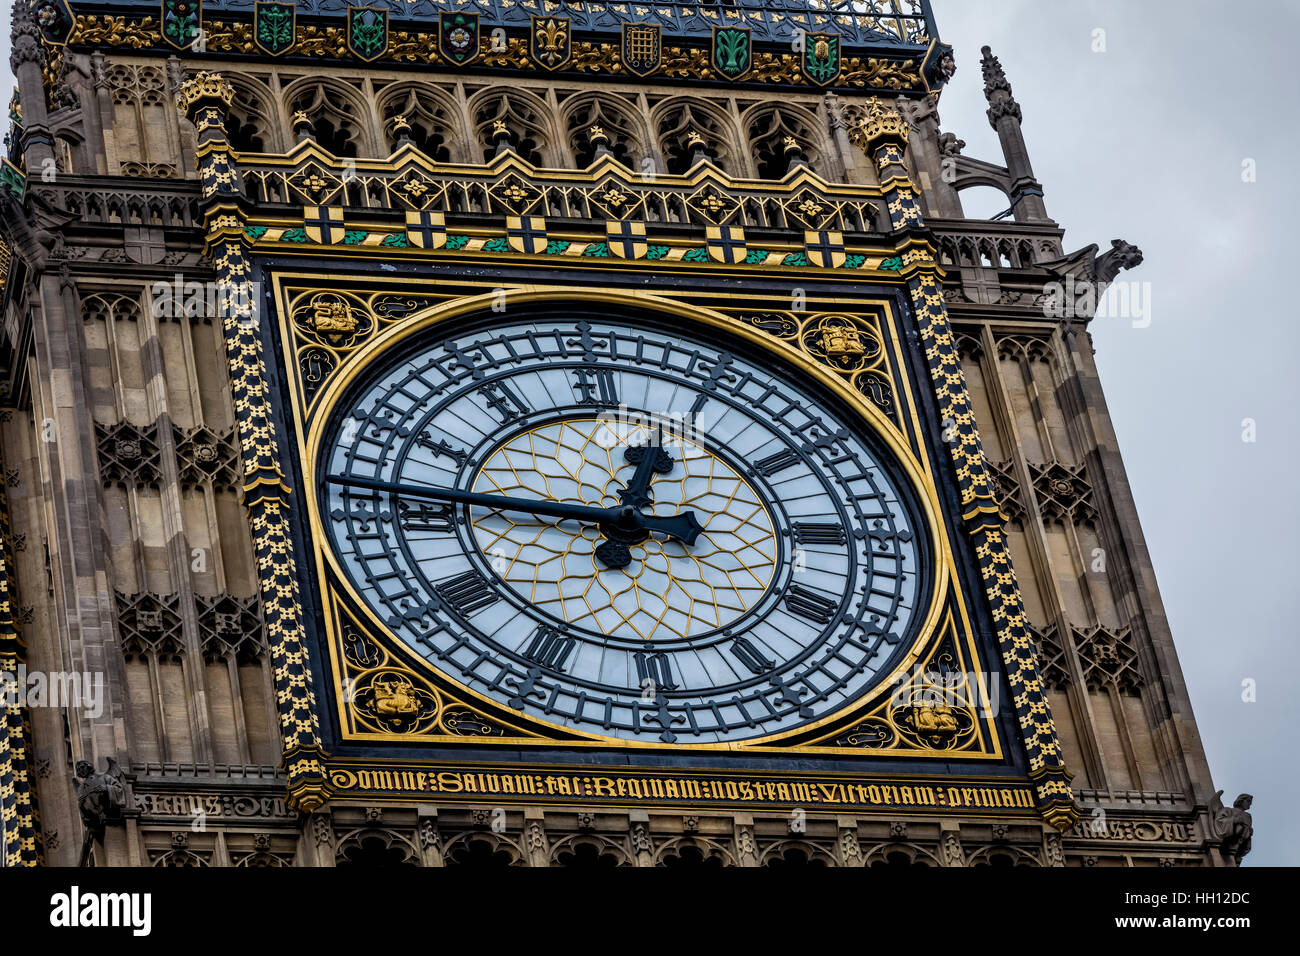 Détail de l'horloge l'horloge de la tour de la reine Elizabeth II à Westminster, connu sous le nom de Big Ben Banque D'Images